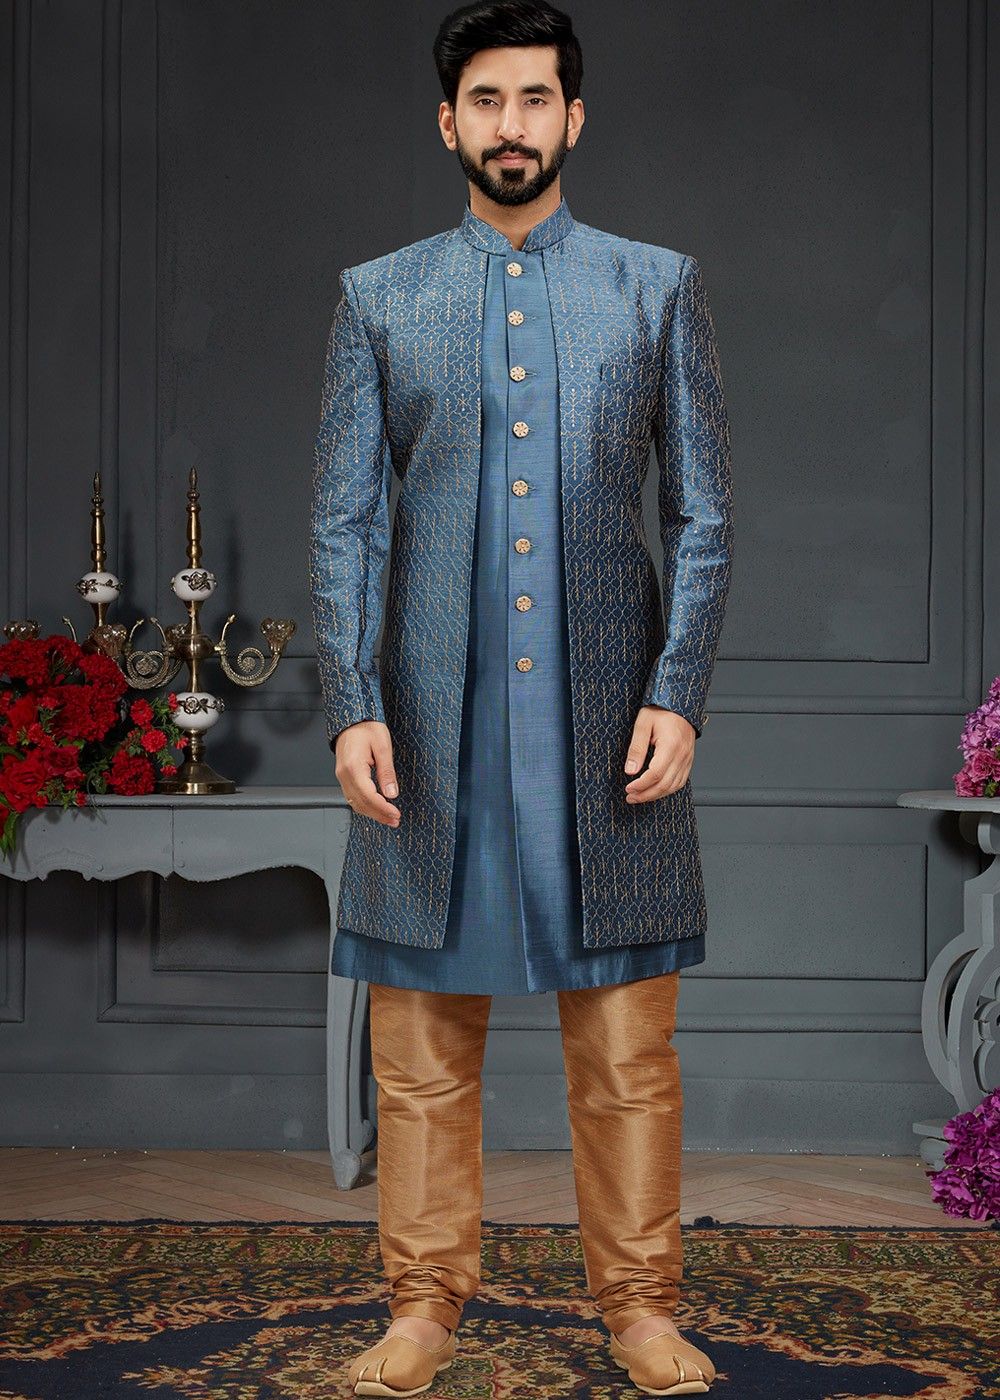 Indo Western for Men - Buy Blue Sequined Indo Western Set Online